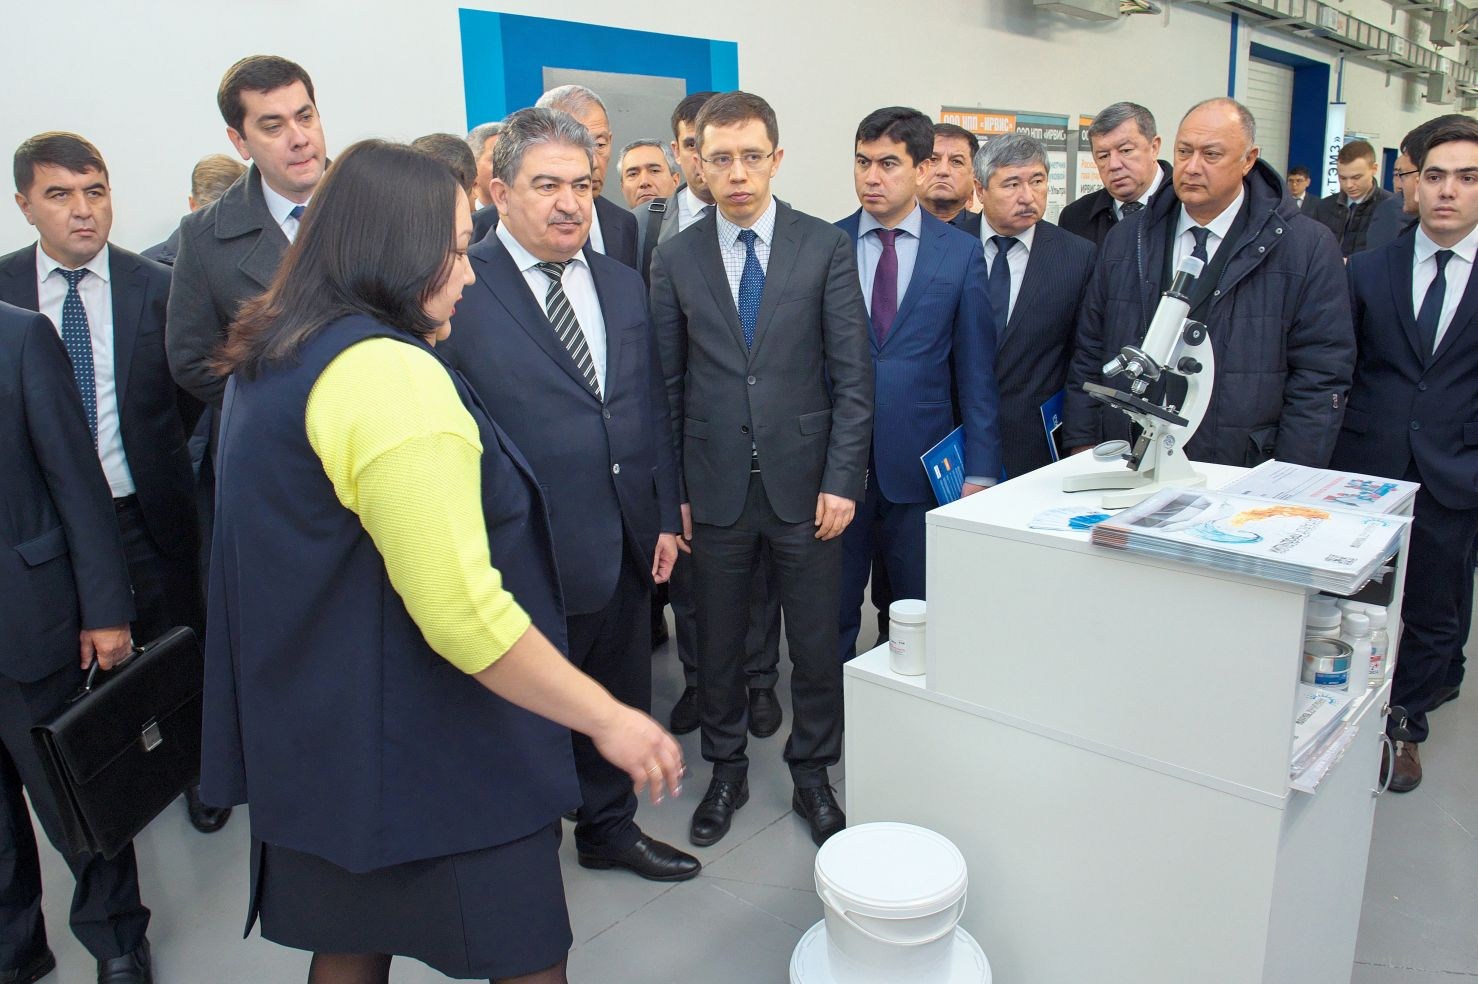 ООО «Инновационные технологии» приняло участие в выставке экспортно-ориентированных производителей в рамках визита делегации Республики Узбекистан